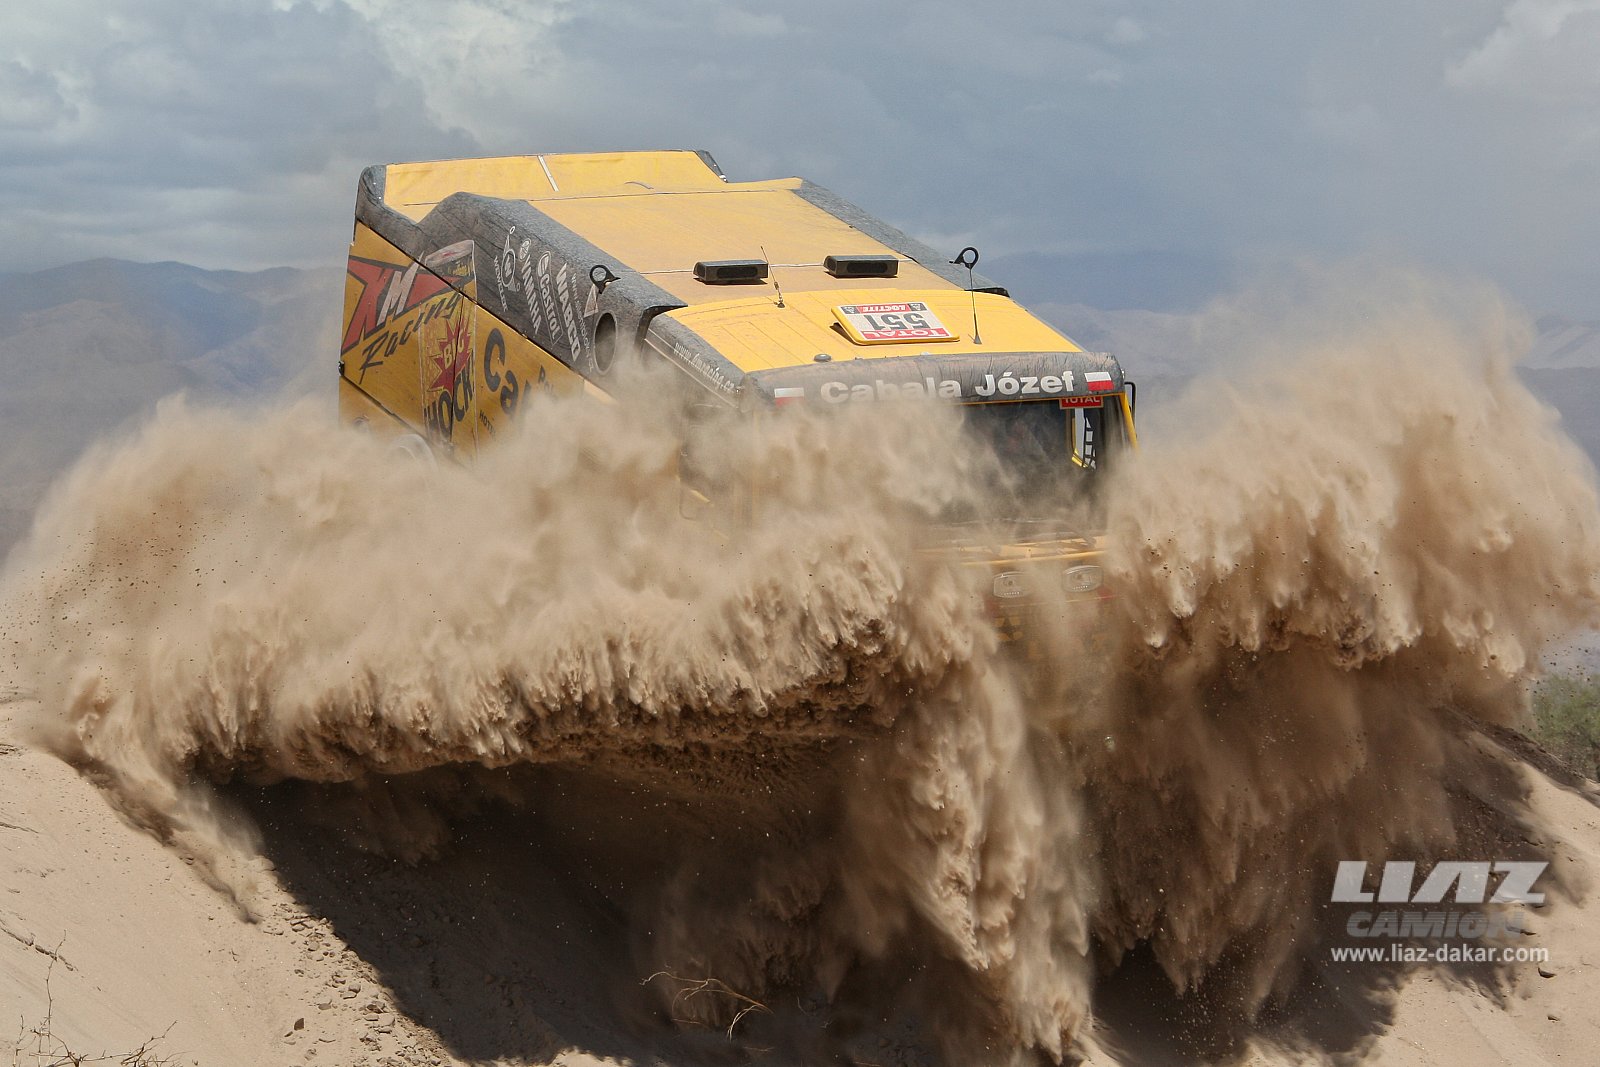 LIAZ Dakar 2012